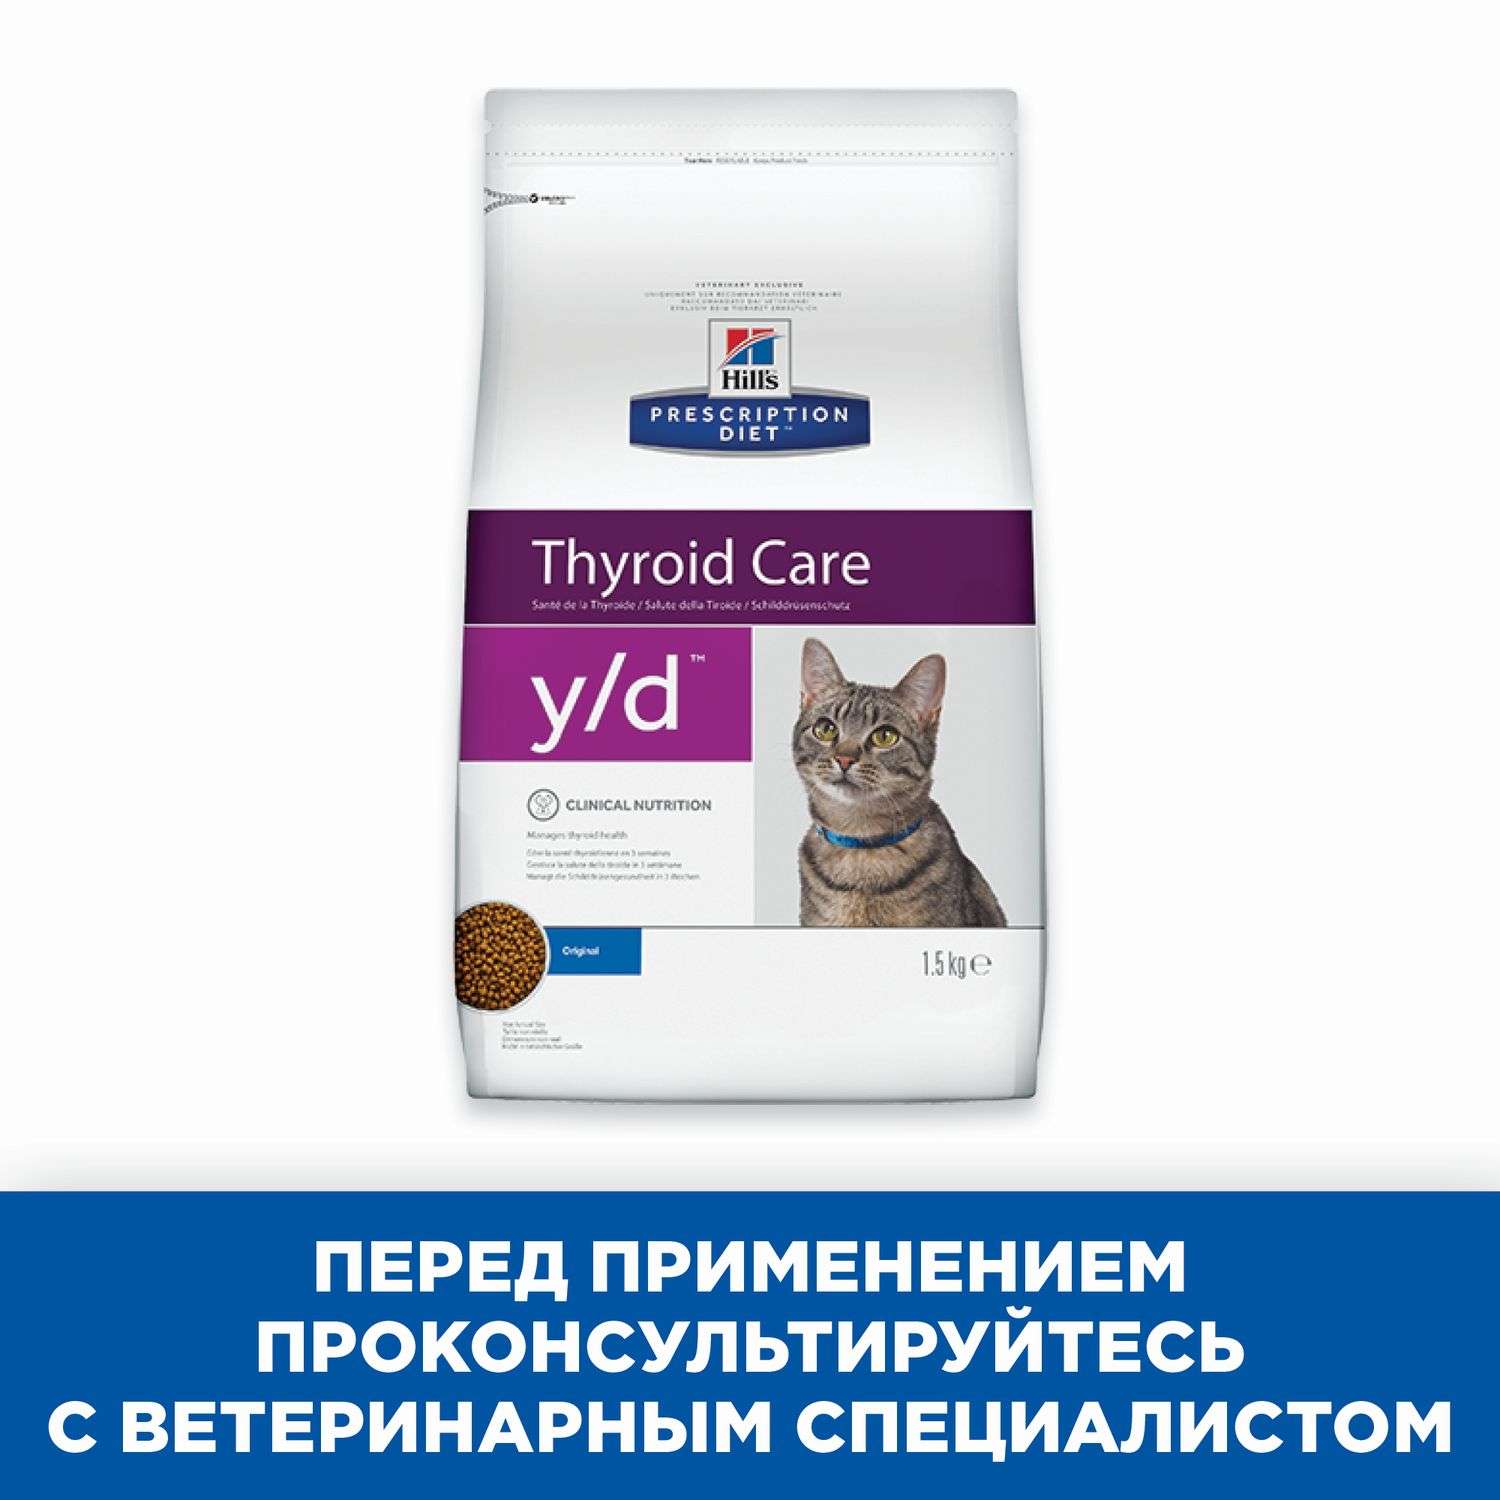 Корм для кошек HILLS 1.5кг Prescription Diet y/d Thyroid Care для щитовидной железы сухой - фото 5